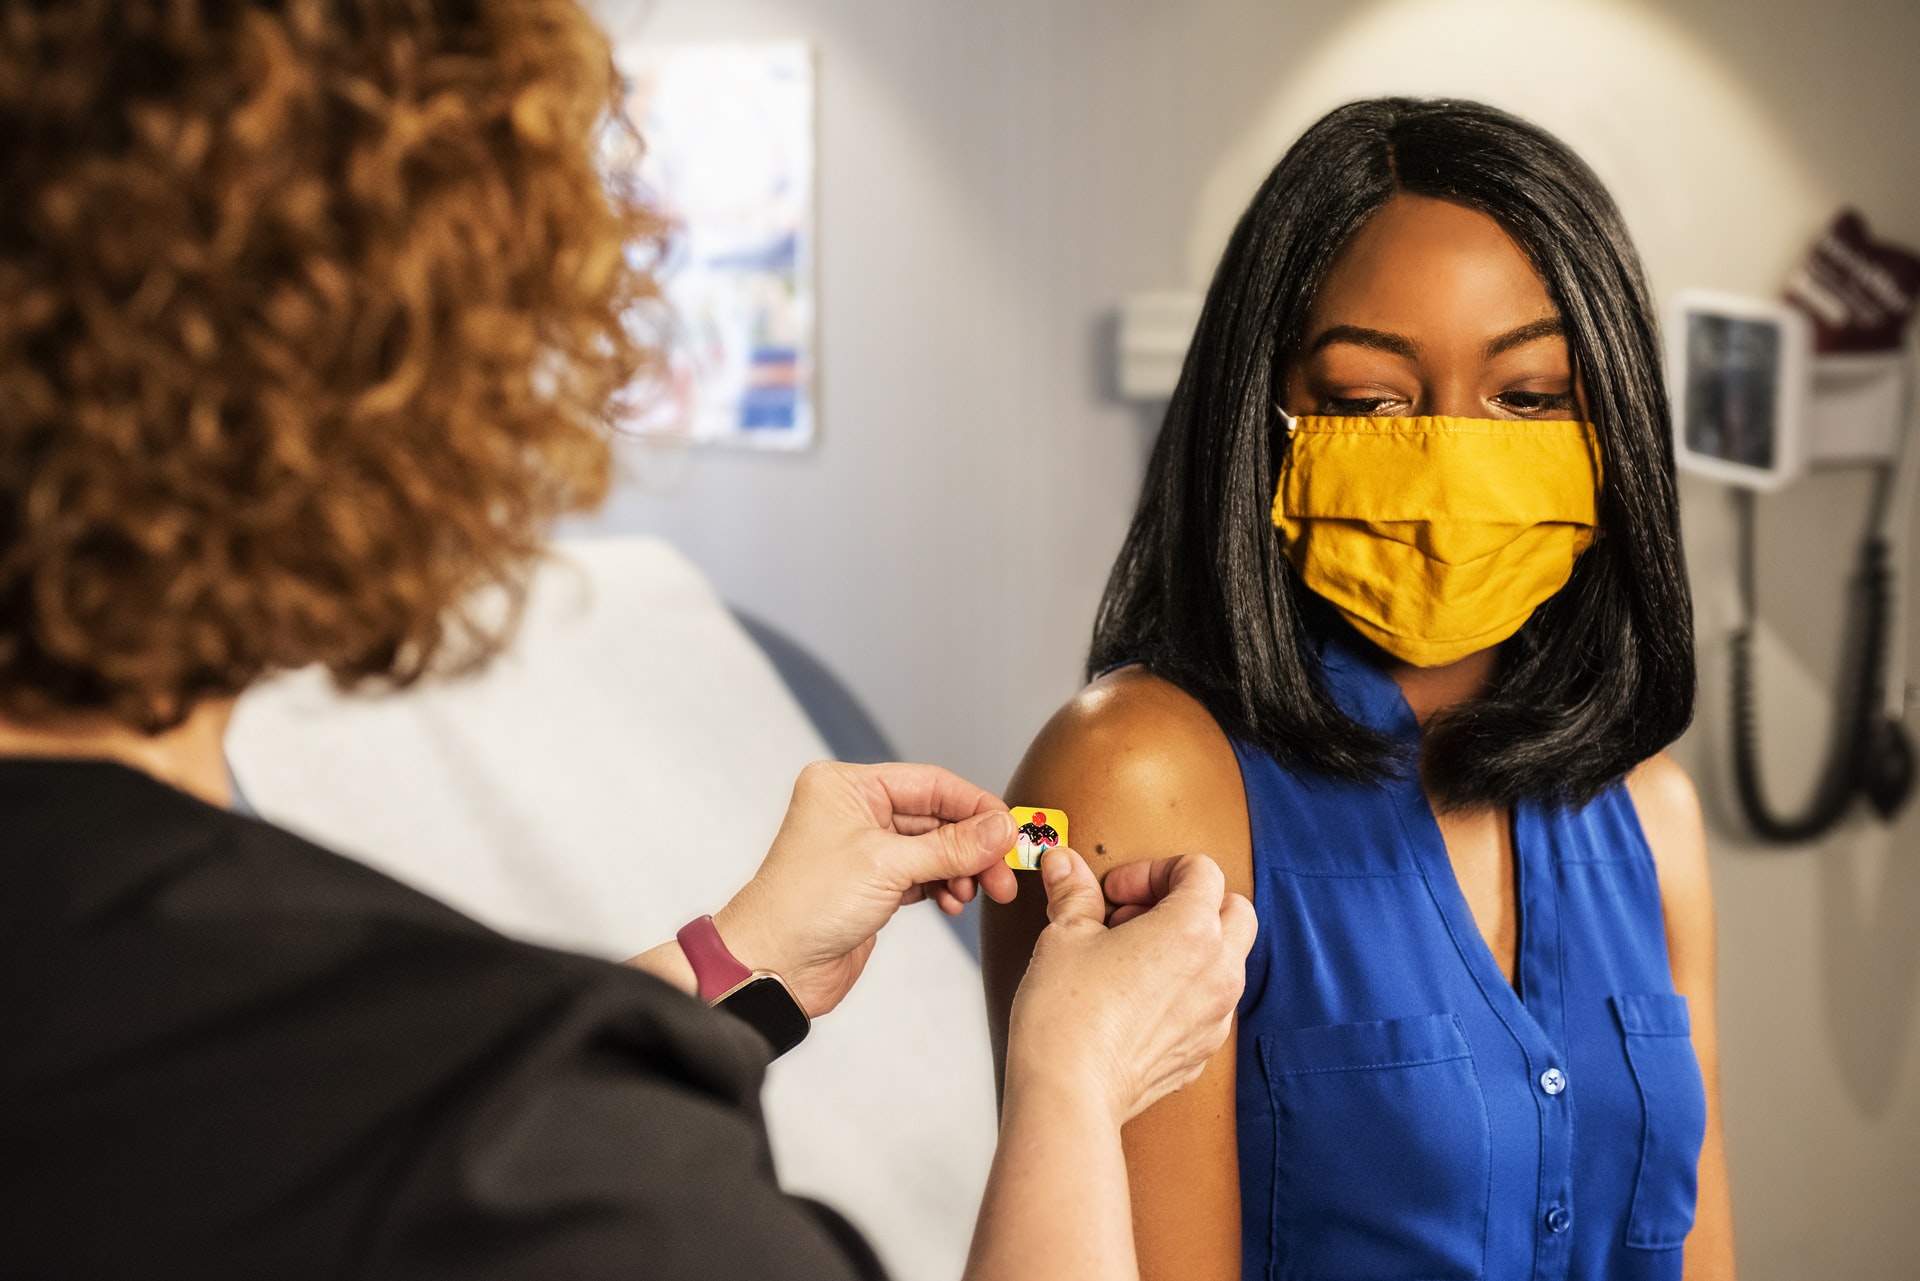 Una enfermera pone una bandita a una joven en su brazo, después de haber aplicado una vacuna. Foto: UNsplash / CDC